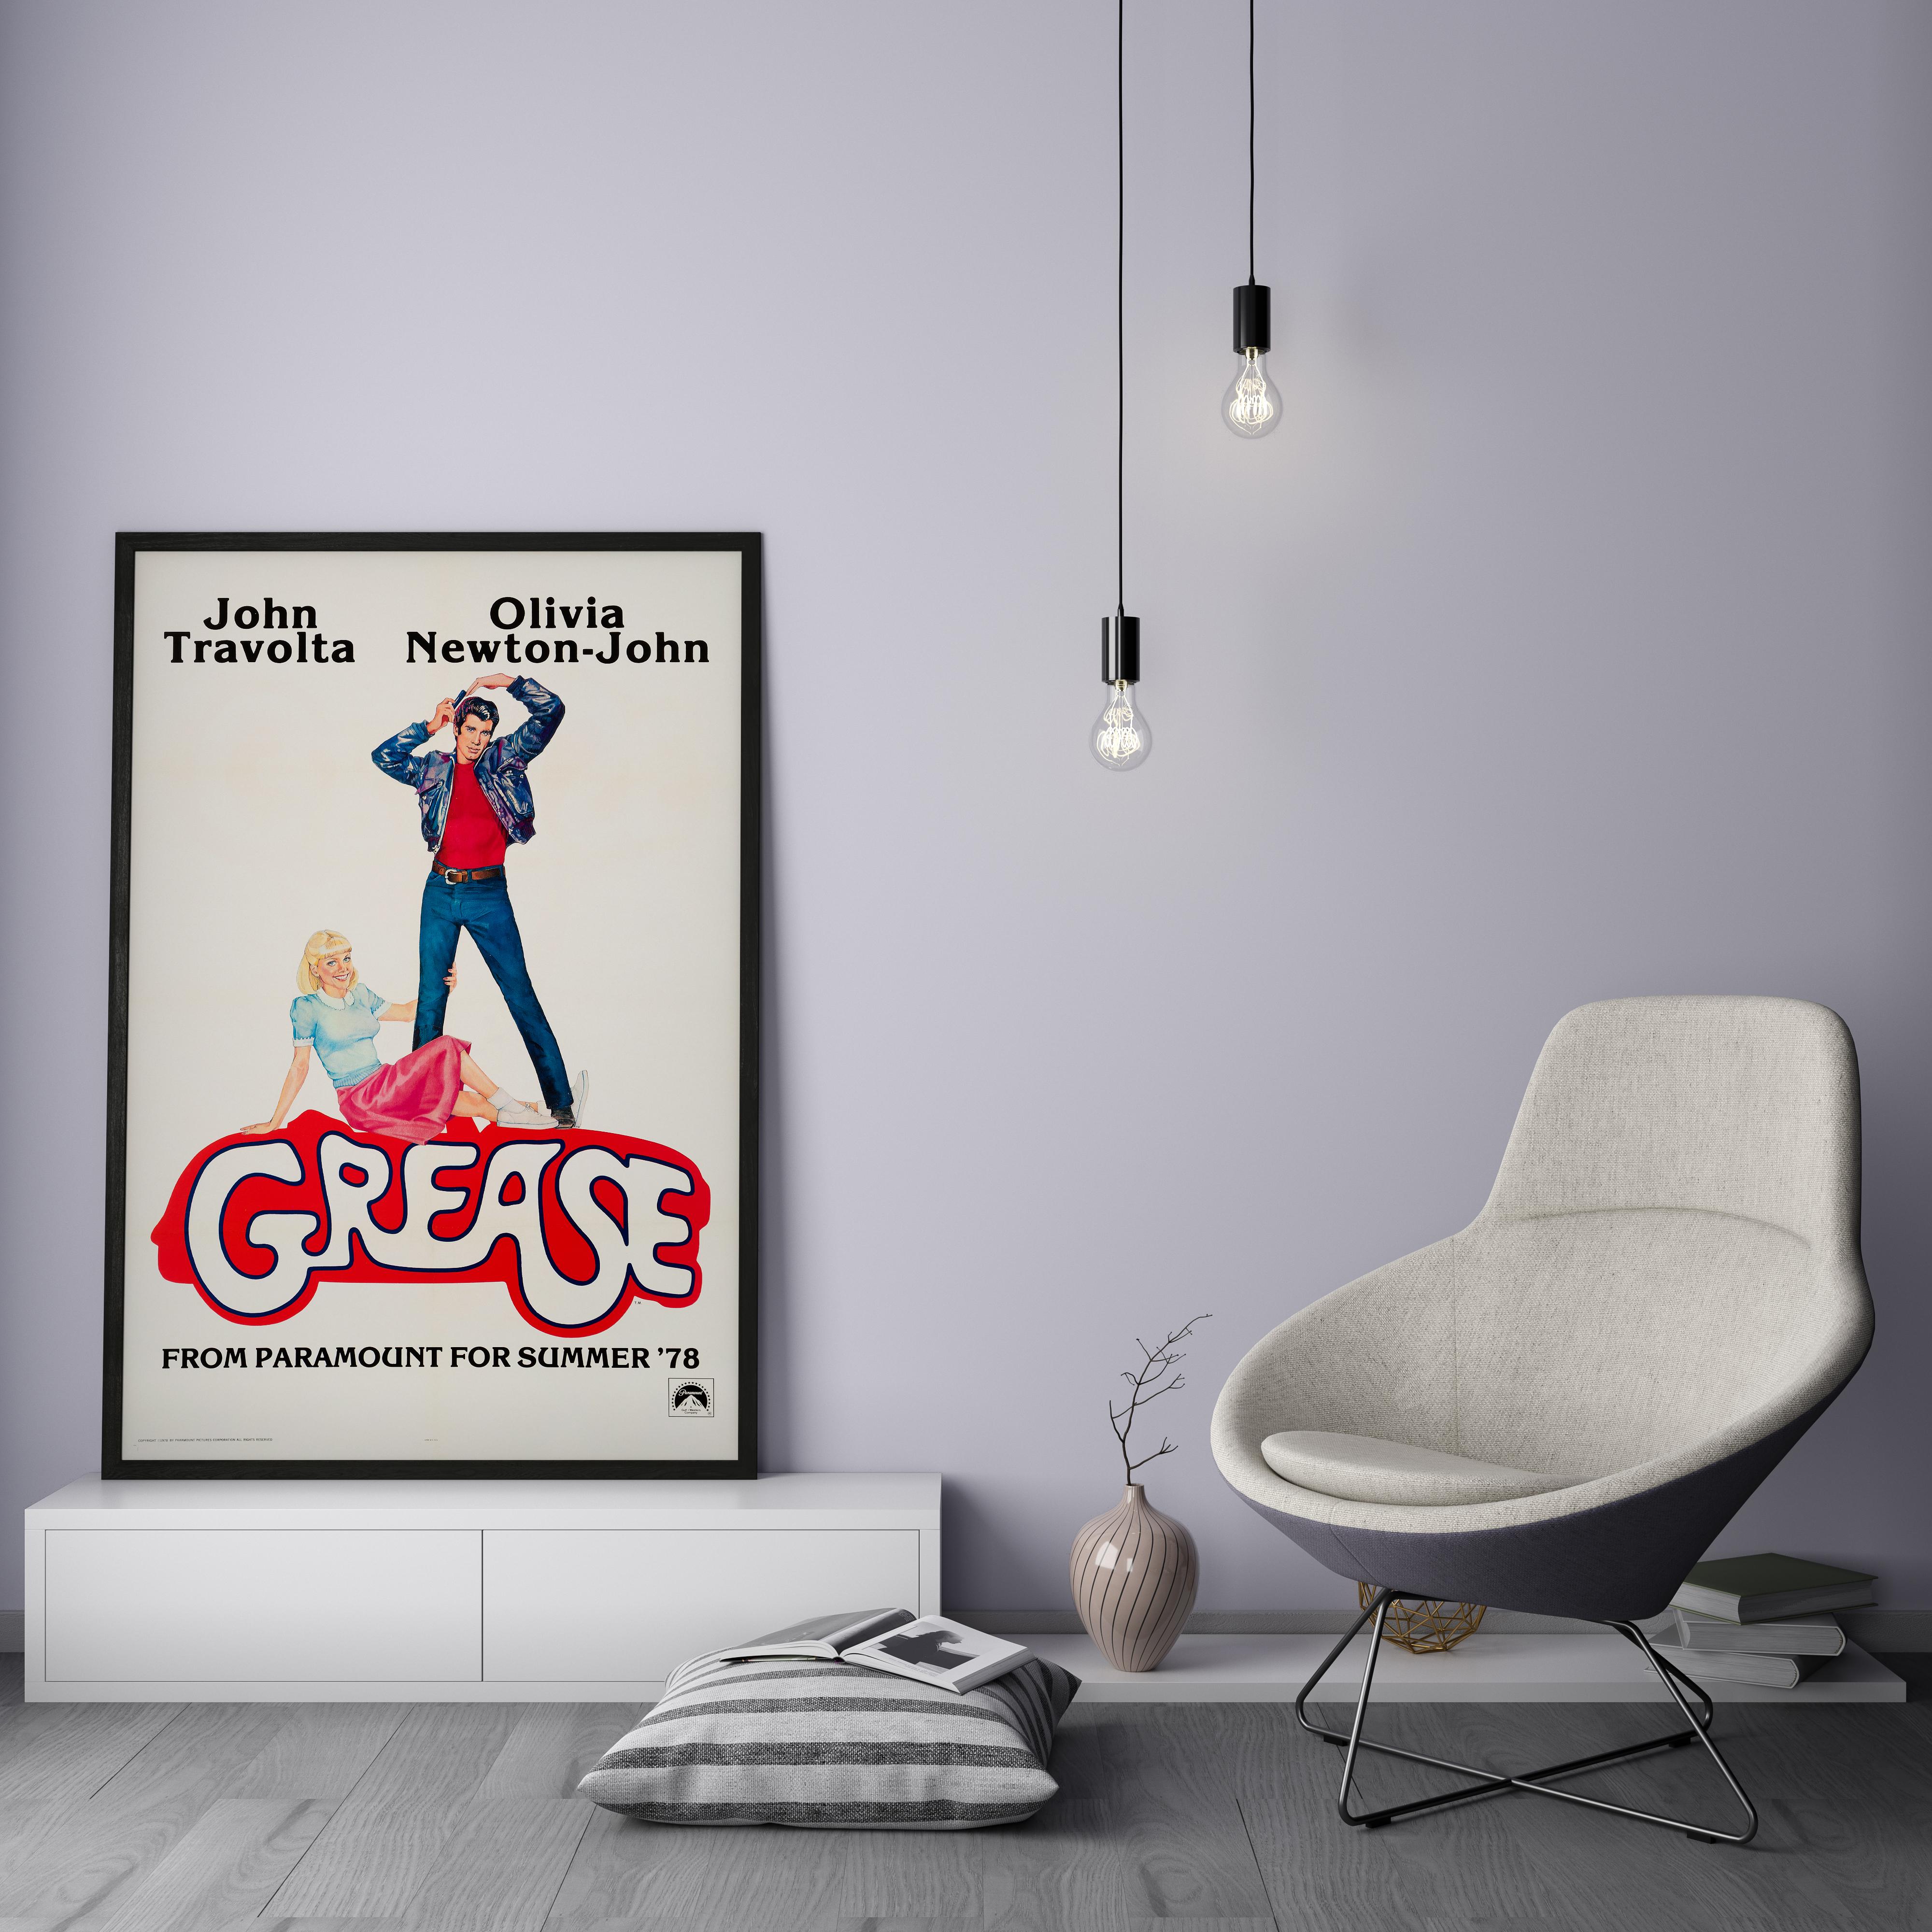 original grease poster